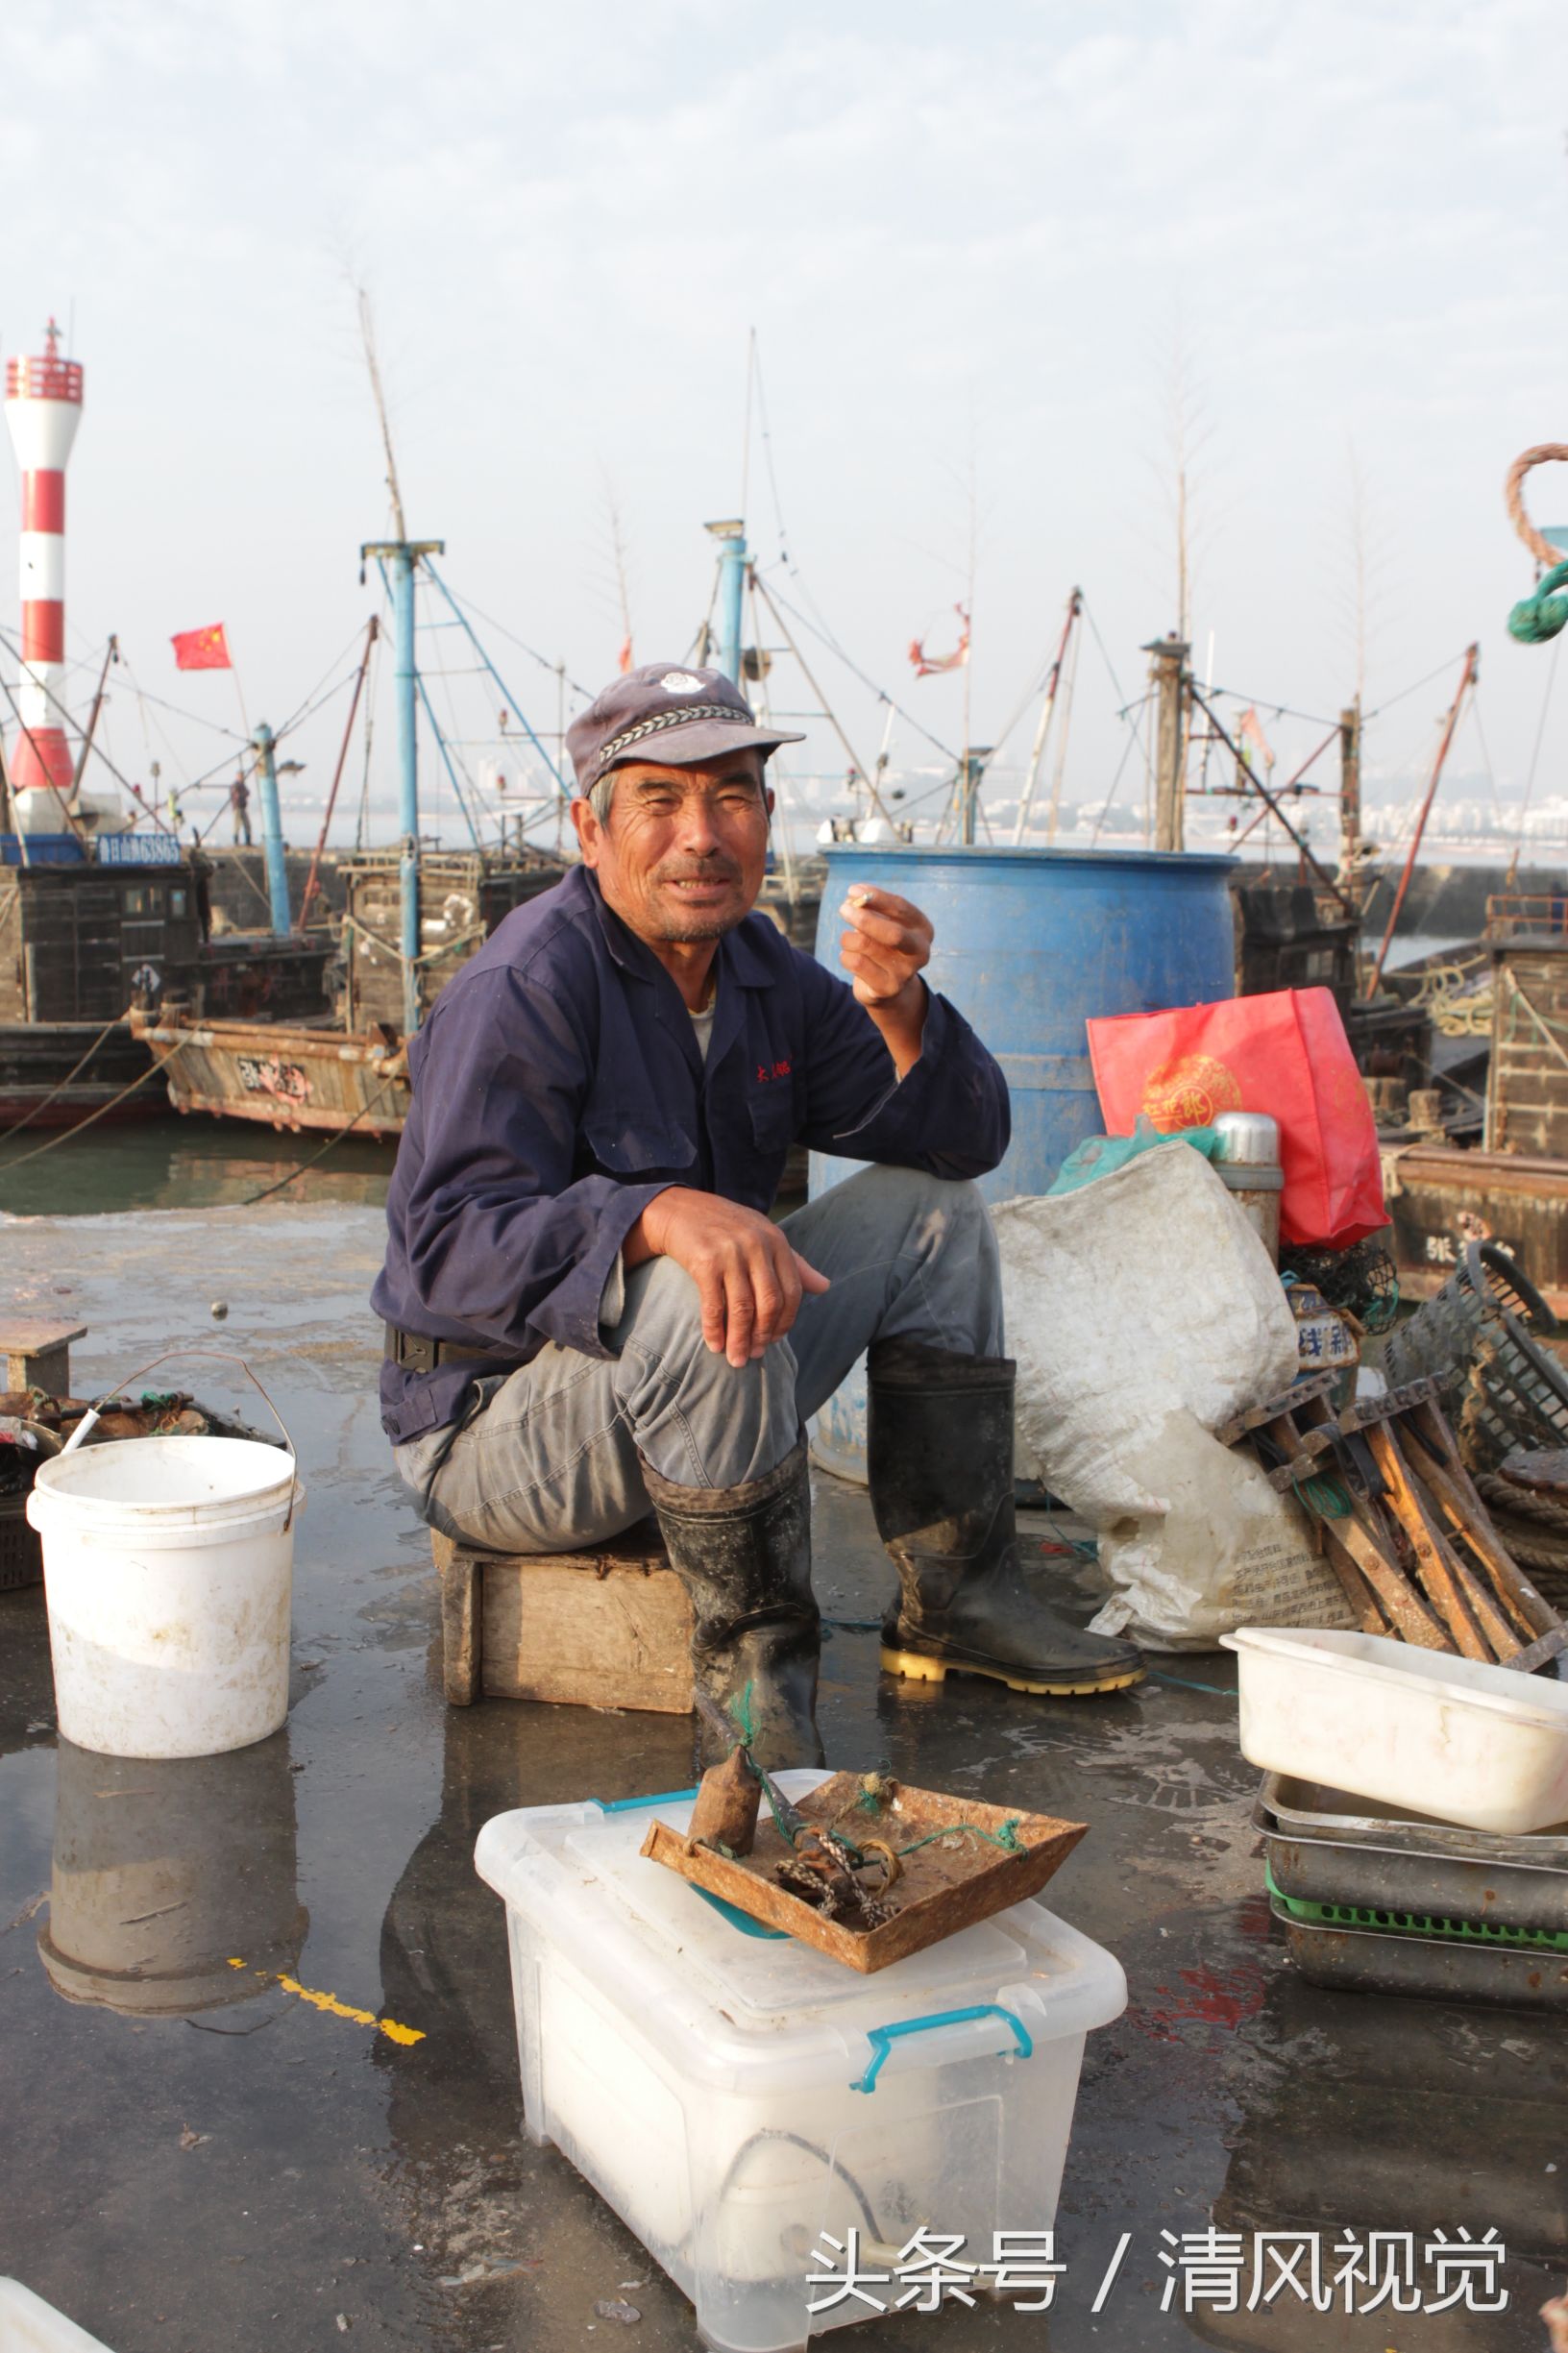 66岁老渔民迎风抗浪40多年如今靠在码头上给儿子分拣海鲜过日子